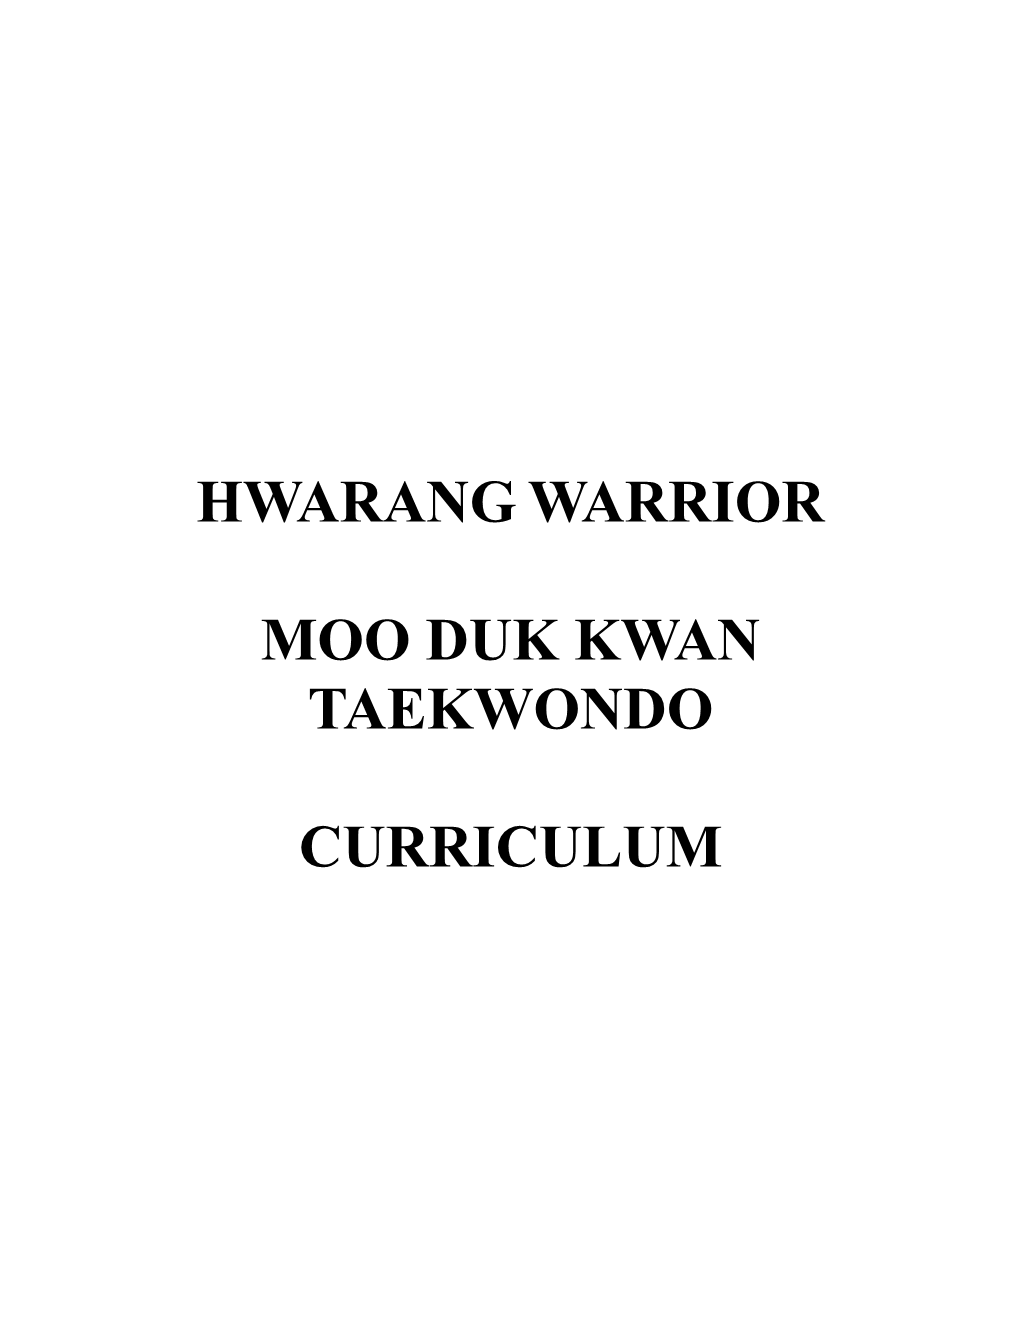 Hwarang Warrior Moo Duk Kwan Taekwondo Curriculum